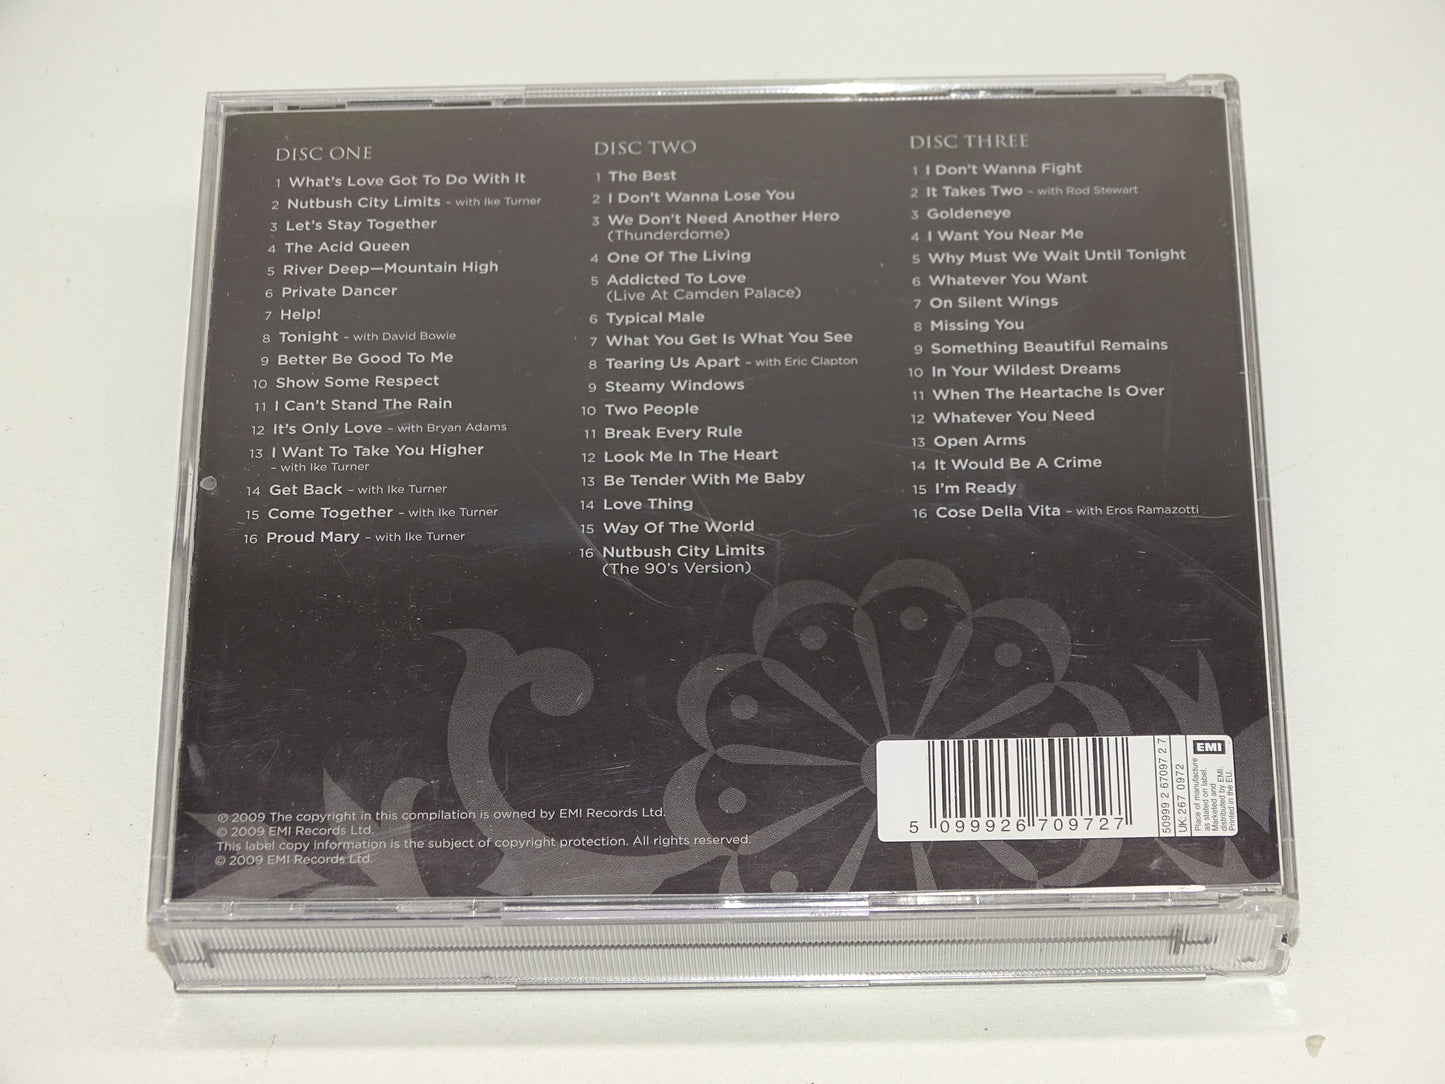 3 x CD, Tina Turner: The Platinum Collection, 2009